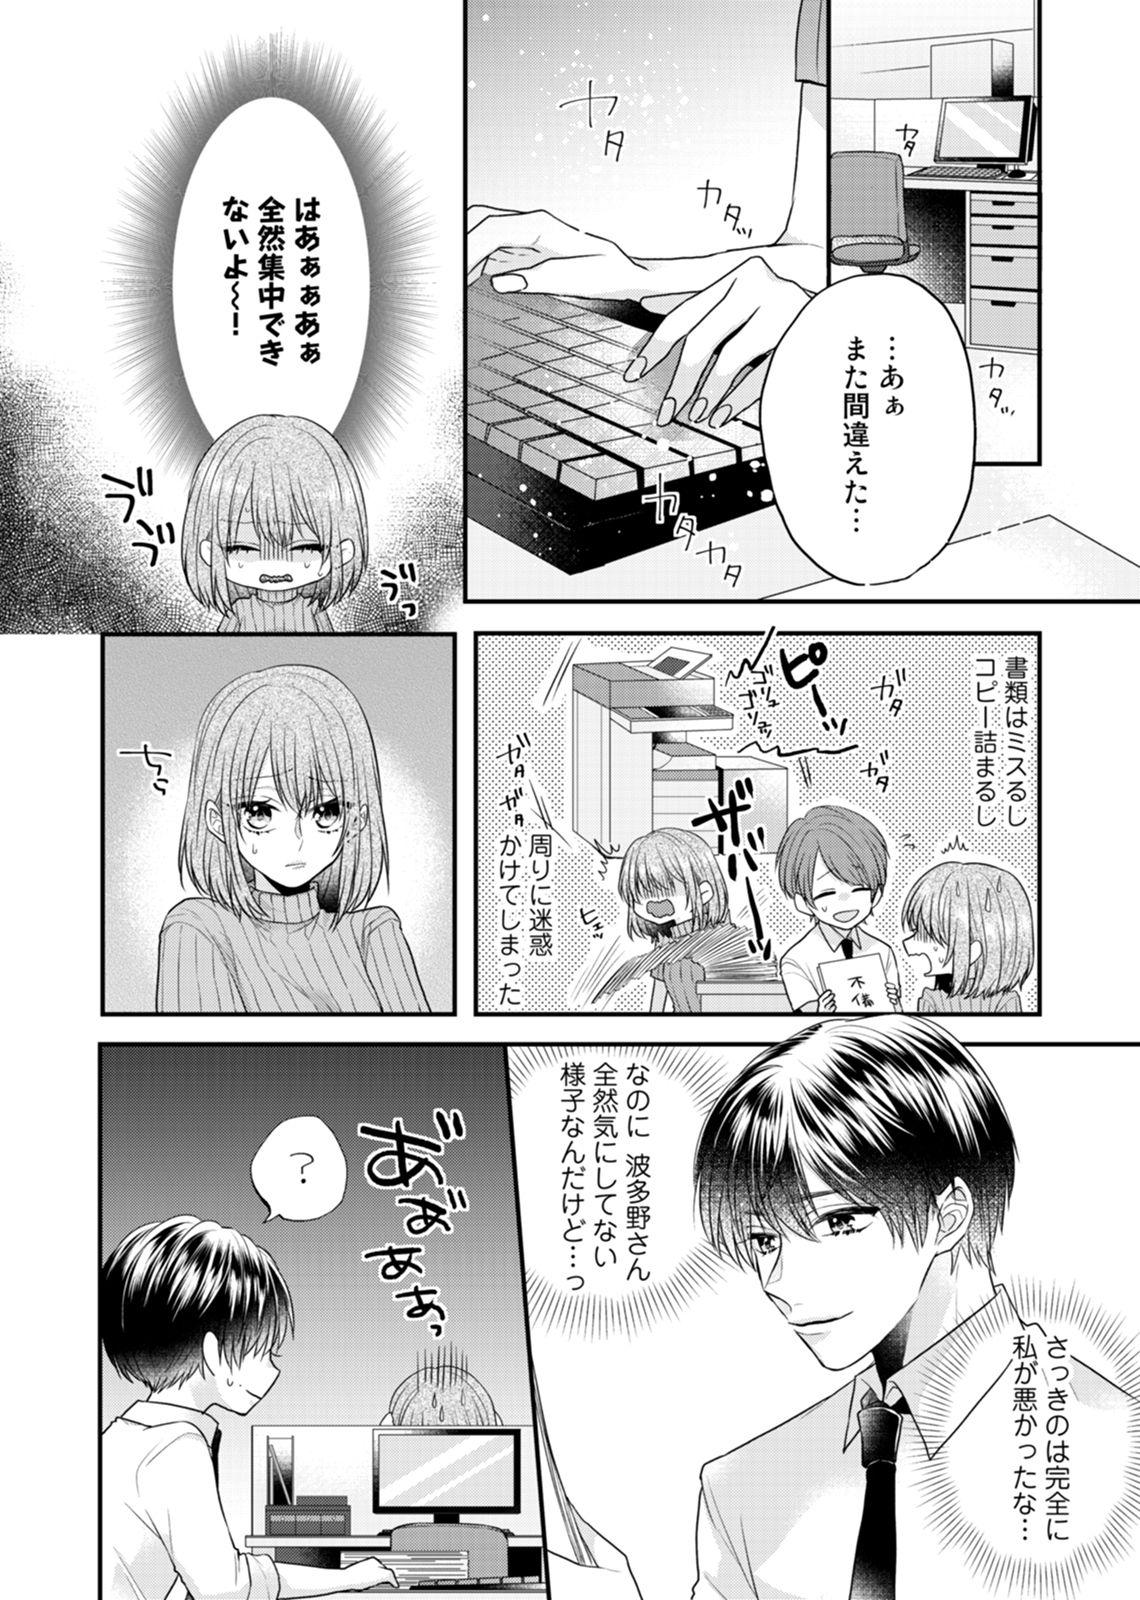 [Kecha] Zangyou Ato, Elevator Uchi wa Tsutsushimi ga Nai. ~Ore no Honshou, Kizuichatta?~ Ch. 1-2 10